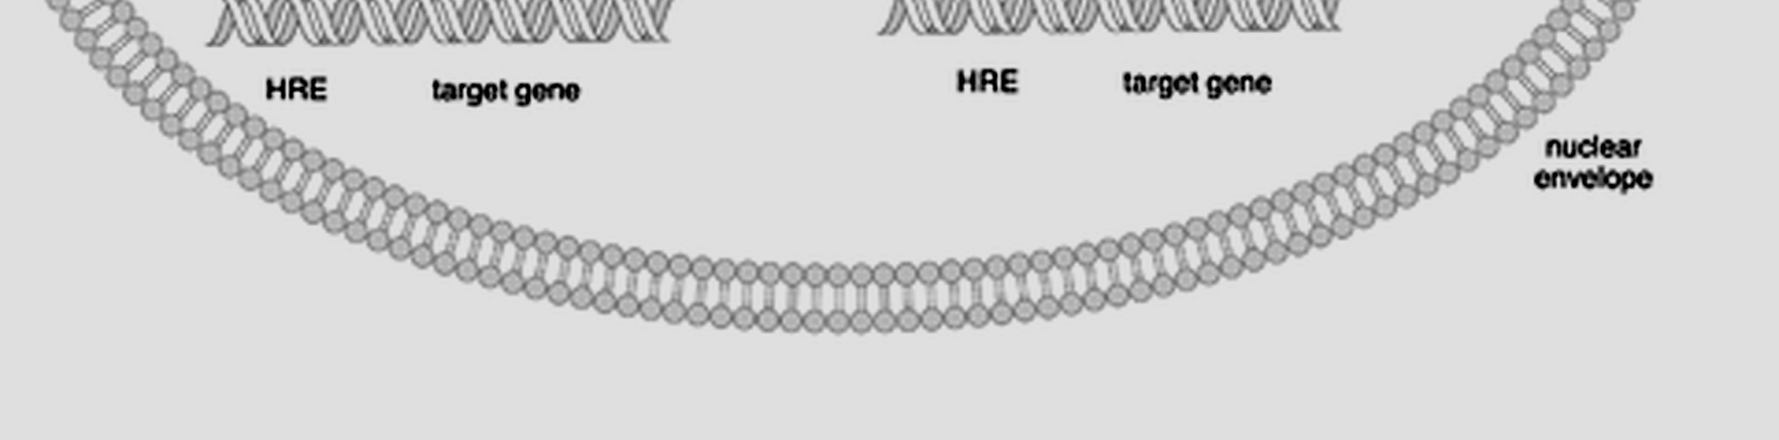 Mehanizam dejstva tireoidnih hormona Receptori za tireoidni hormone na jedru; afinitet za T3 je 10x veći nego za T4. Broj nuklearnih receptora - mali.